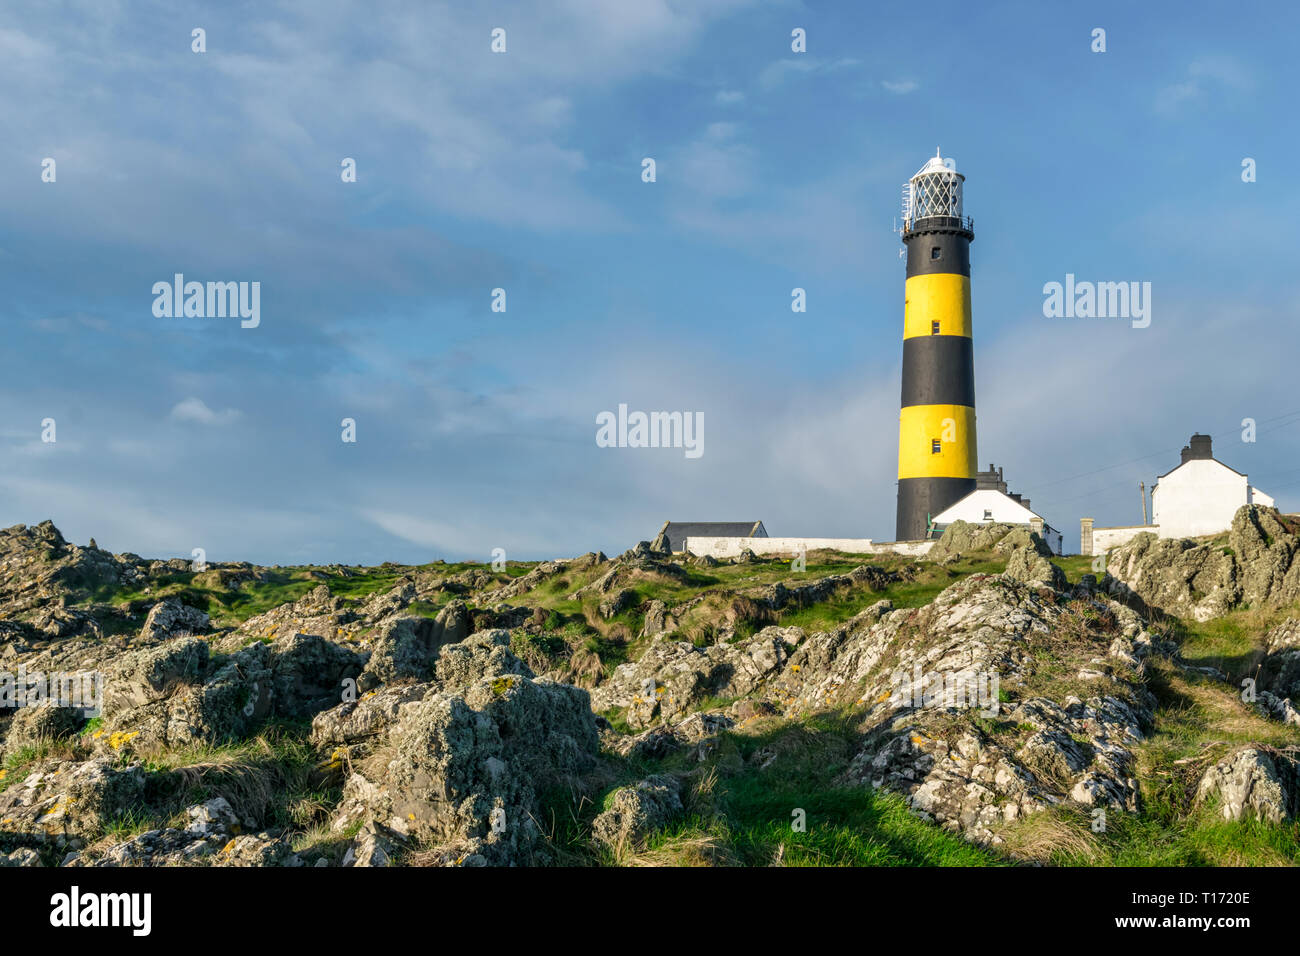 Esta es una imagen de St John's Point faro en la costa oriental de Irlanda del Norte en el Mar de Irlanda. Es uno de Irelands muchos costeros icónico li Foto de stock